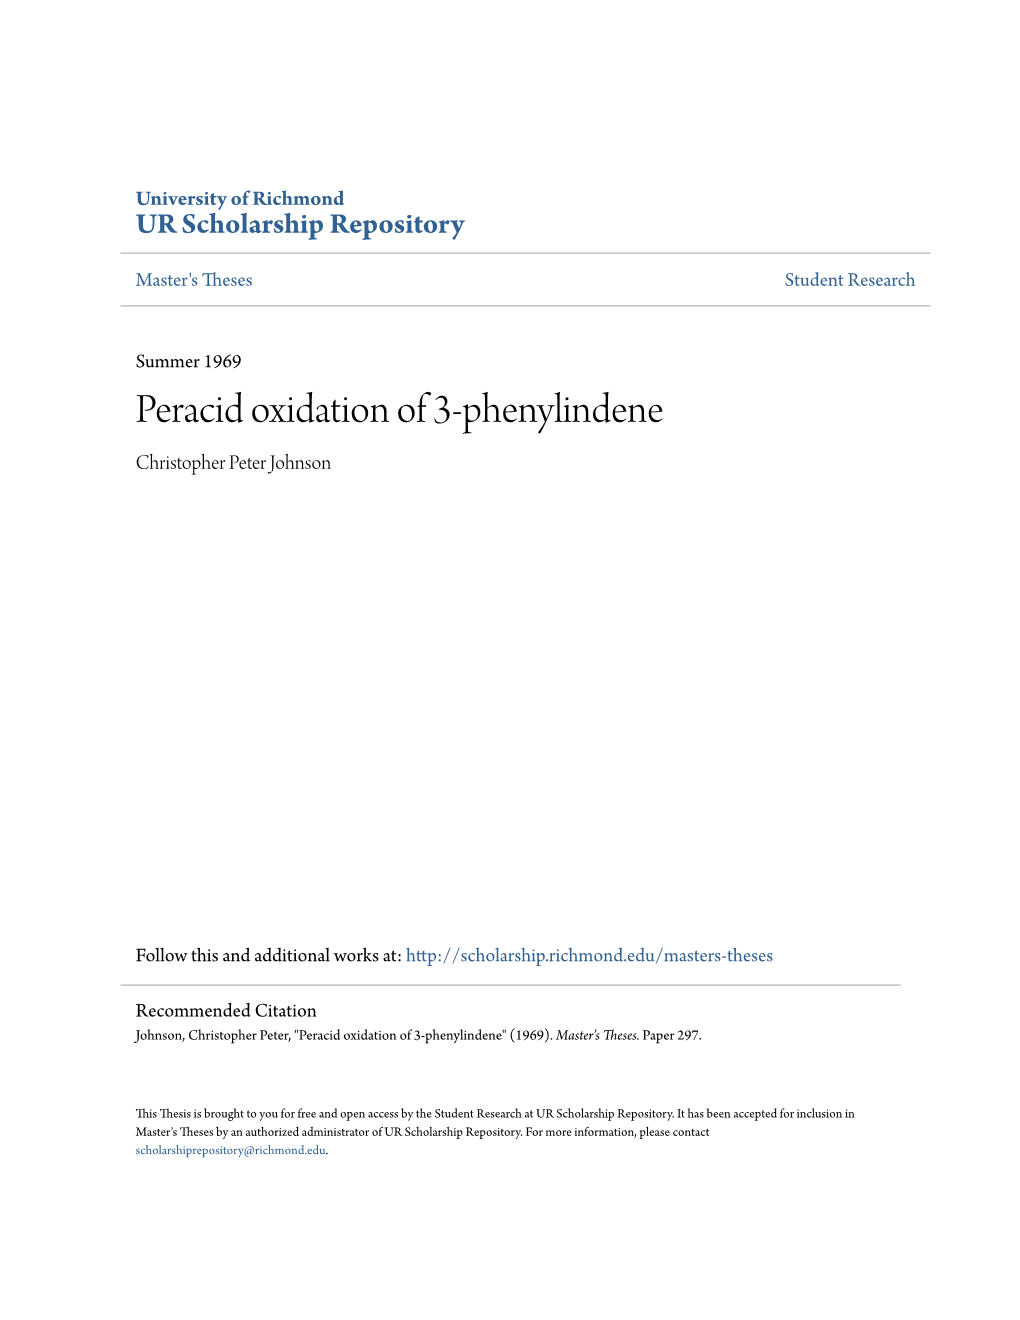 Peracid Oxidation of 3-Phenylindene Christopher Peter Johnson